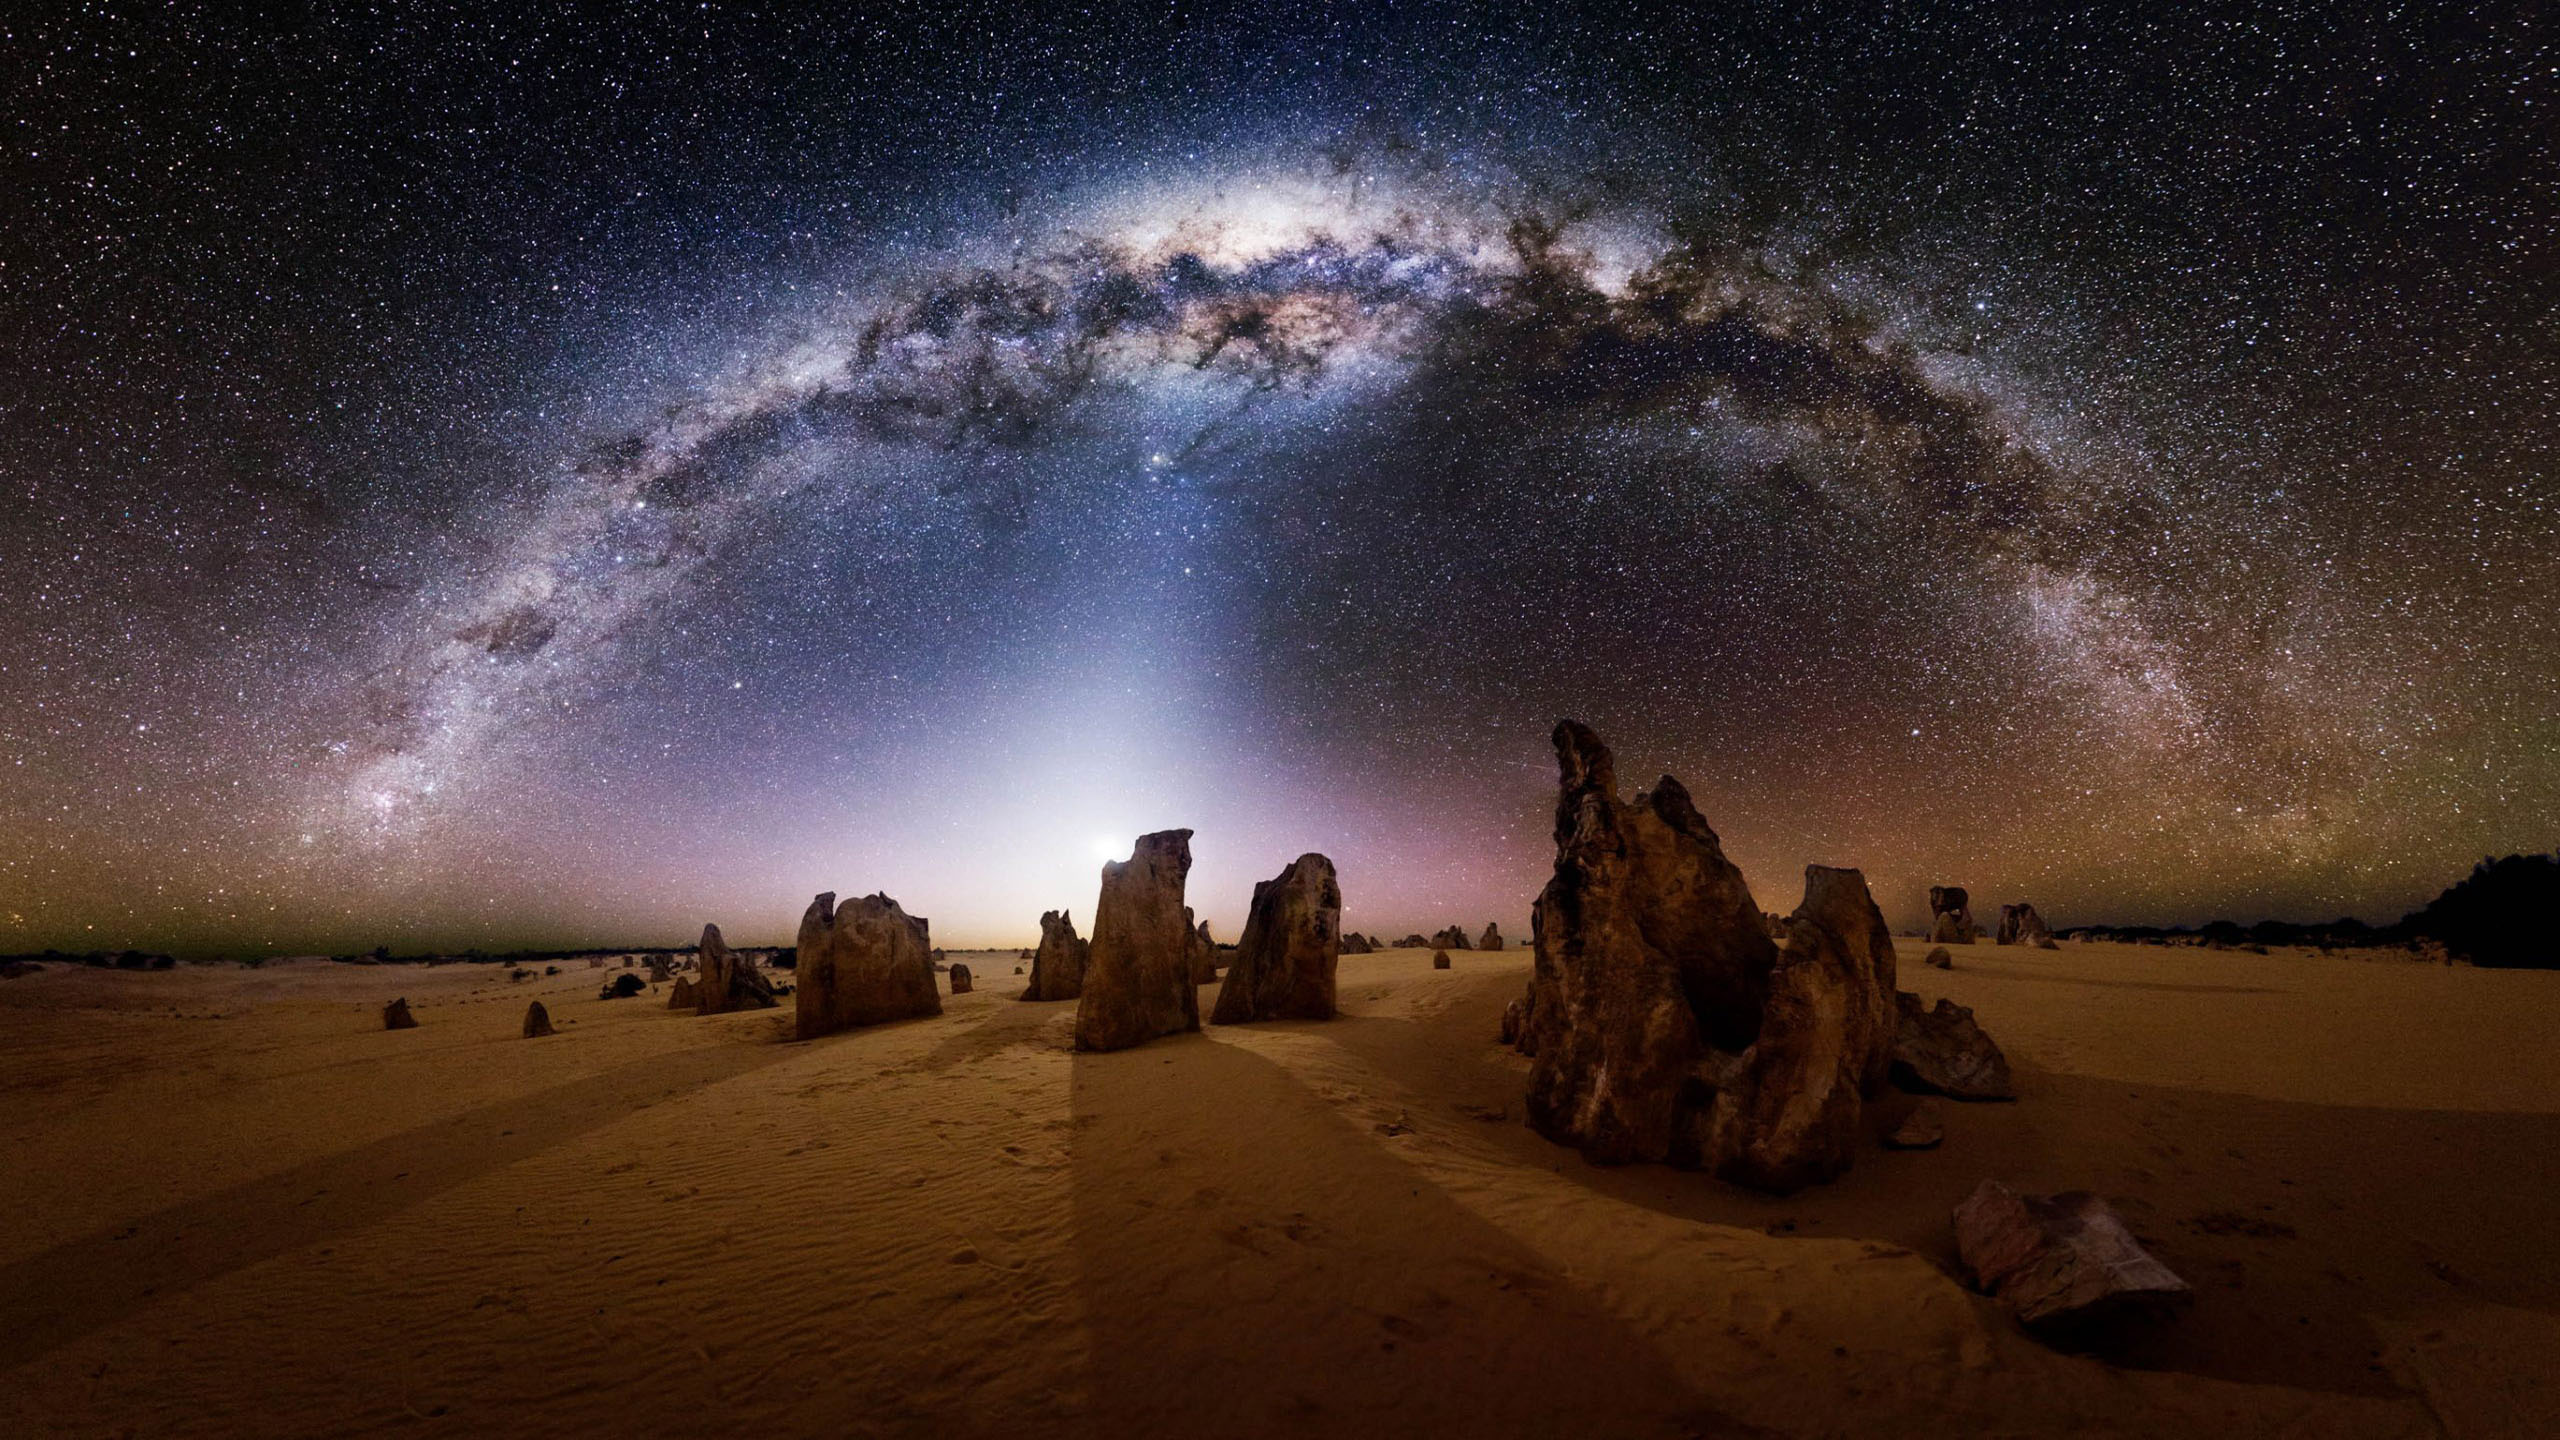 Nambung National Park Australian The Desert Pinakles Milky Way Wallpaper Hd  : 